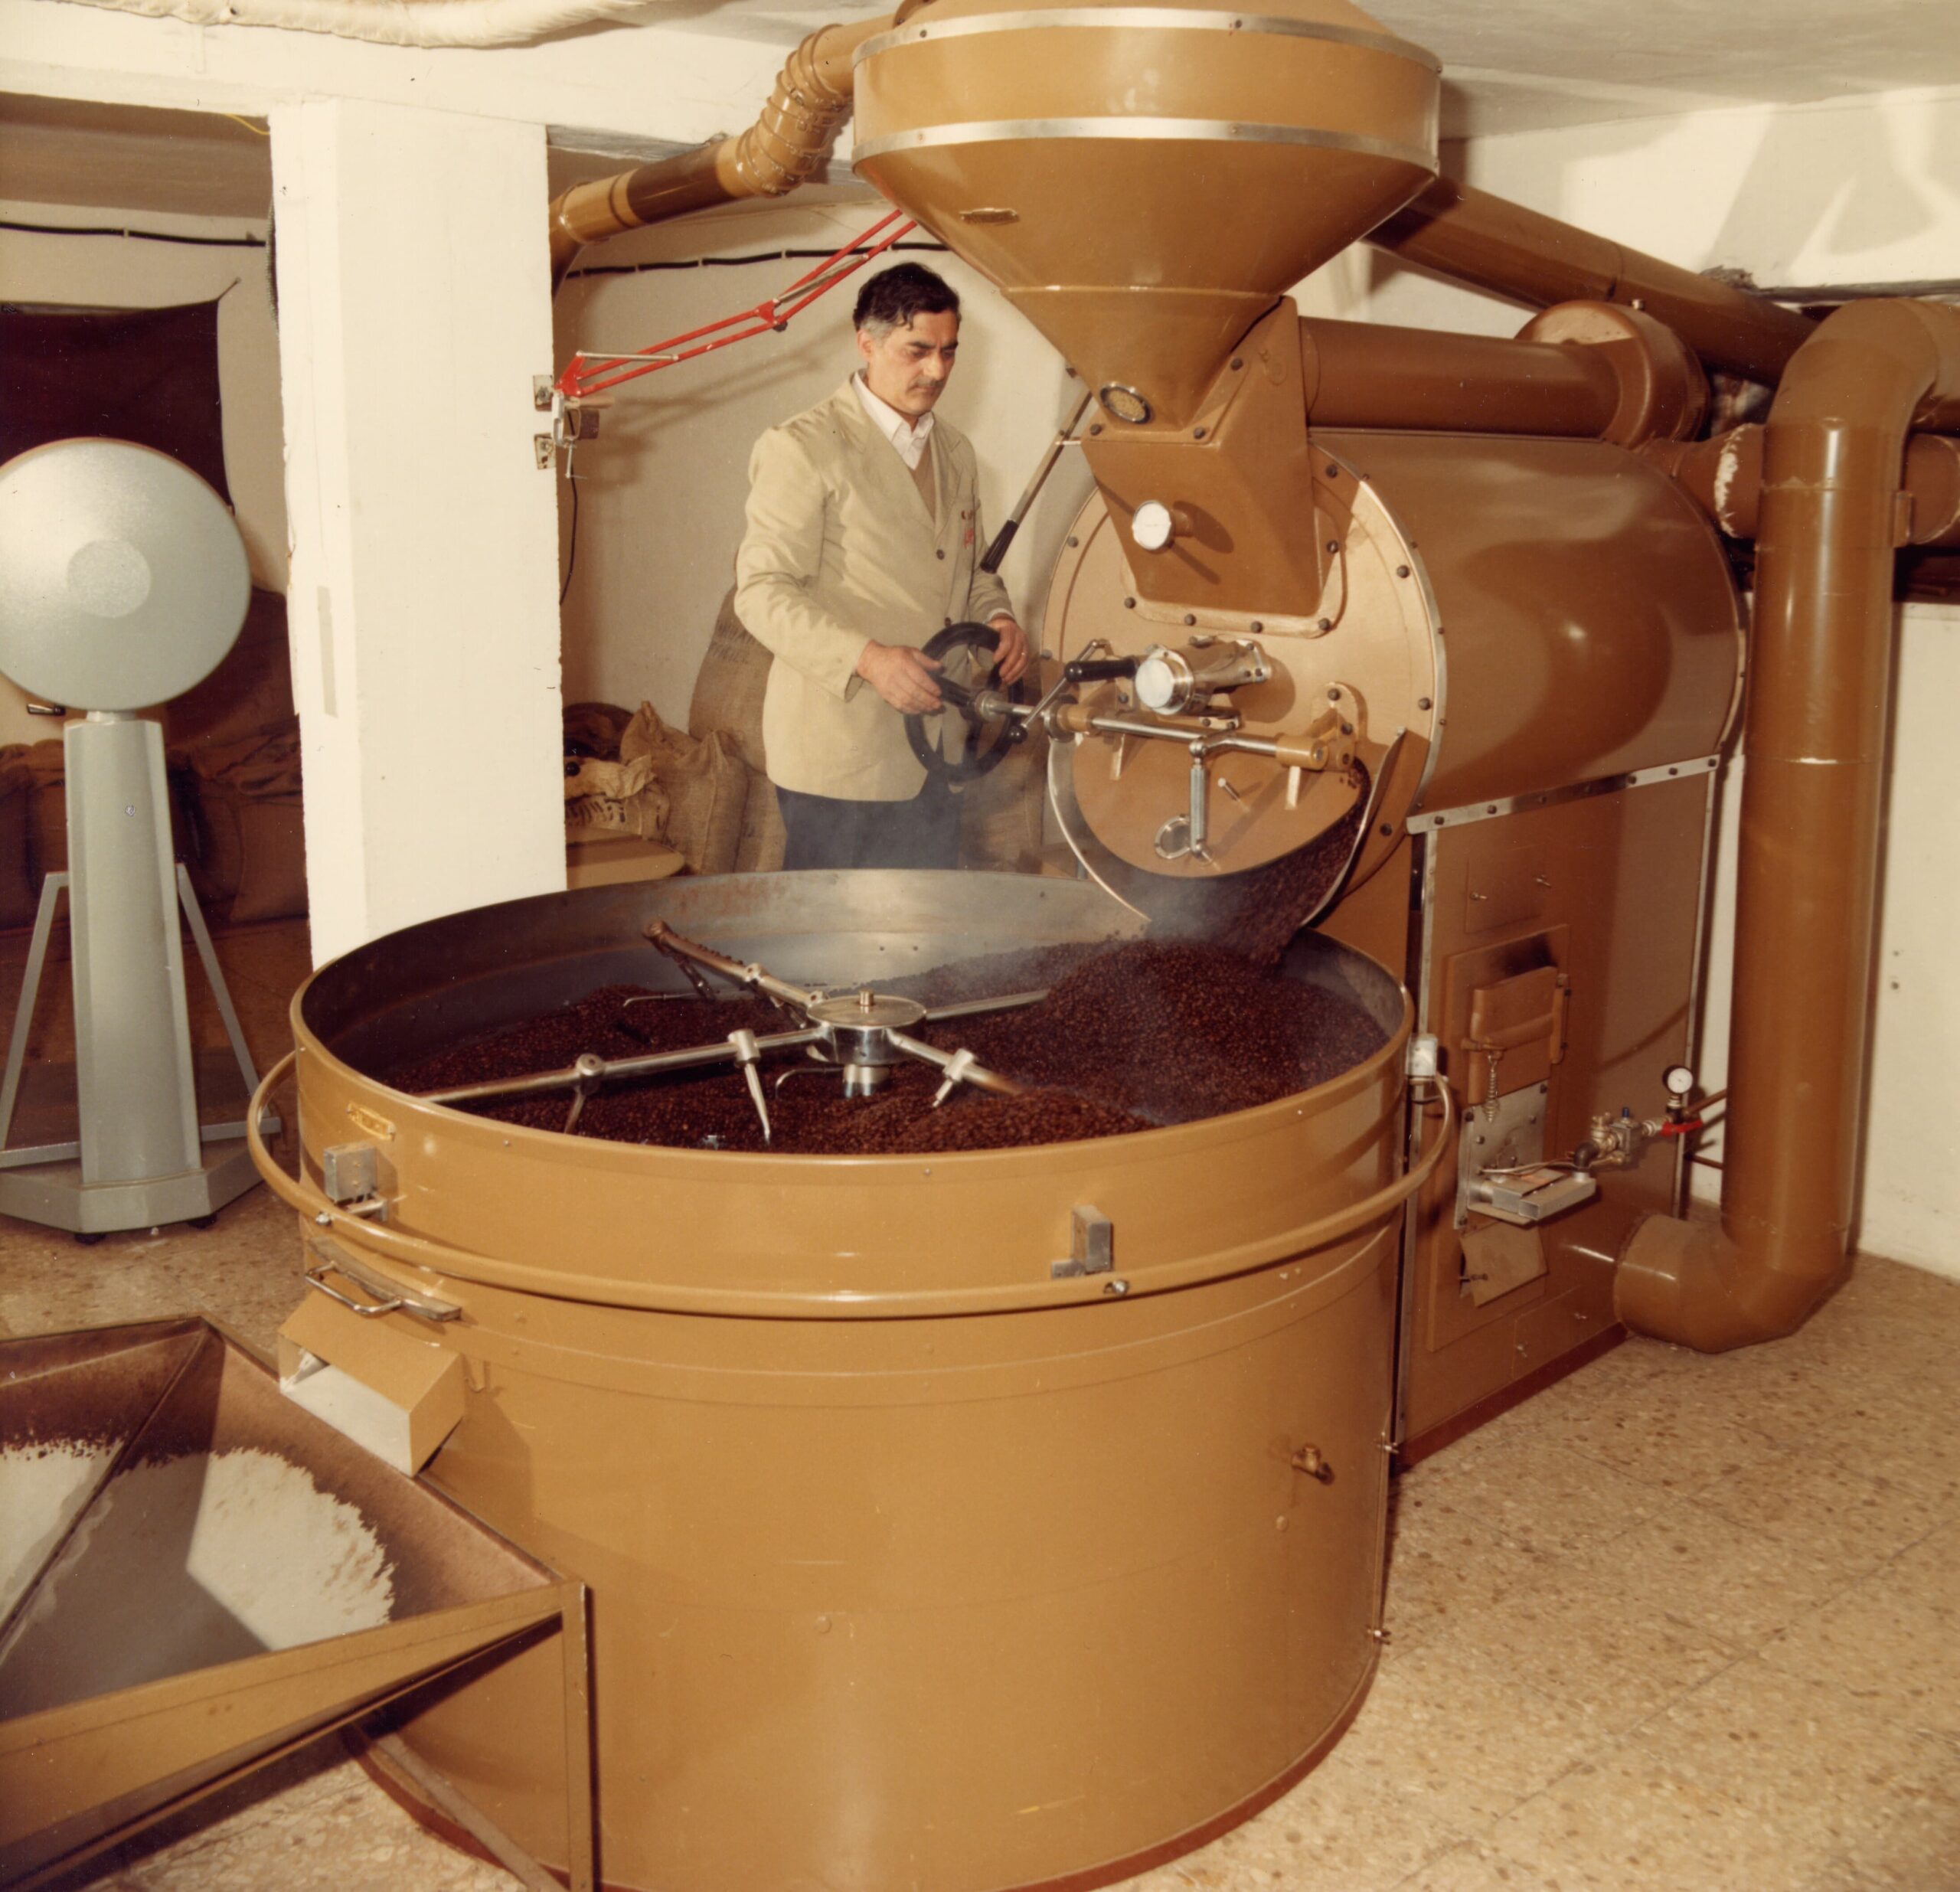 Ferrero Peciarolo Torrefazione Caffè Pe-Fè dal 1973